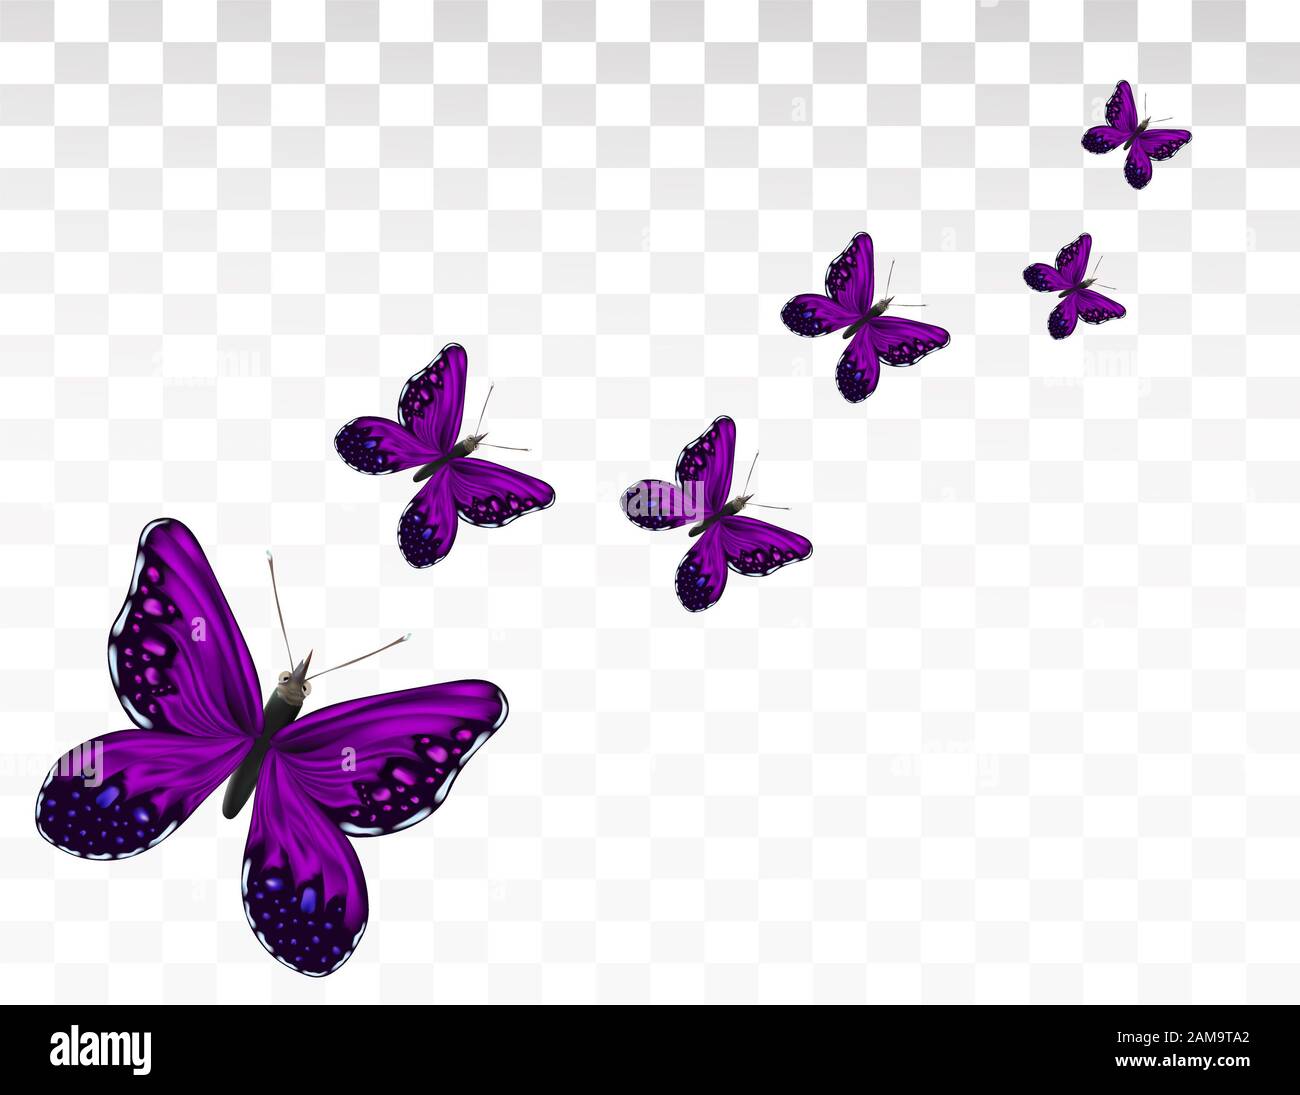 Bướm (butterfly): Cùng hòa mình vào thế giới bướm đầy màu sắc và lãng mạn. Với động tác nhẹ nhàng trên cánh hoa và sắc đẹp nổi bật, bướm là một chủ đề không thể bỏ qua của nhiếp ảnh. Hãy cùng xem hình ảnh liên quan để truyền cảm hứng cho những bức ảnh đầy ý nghĩa.